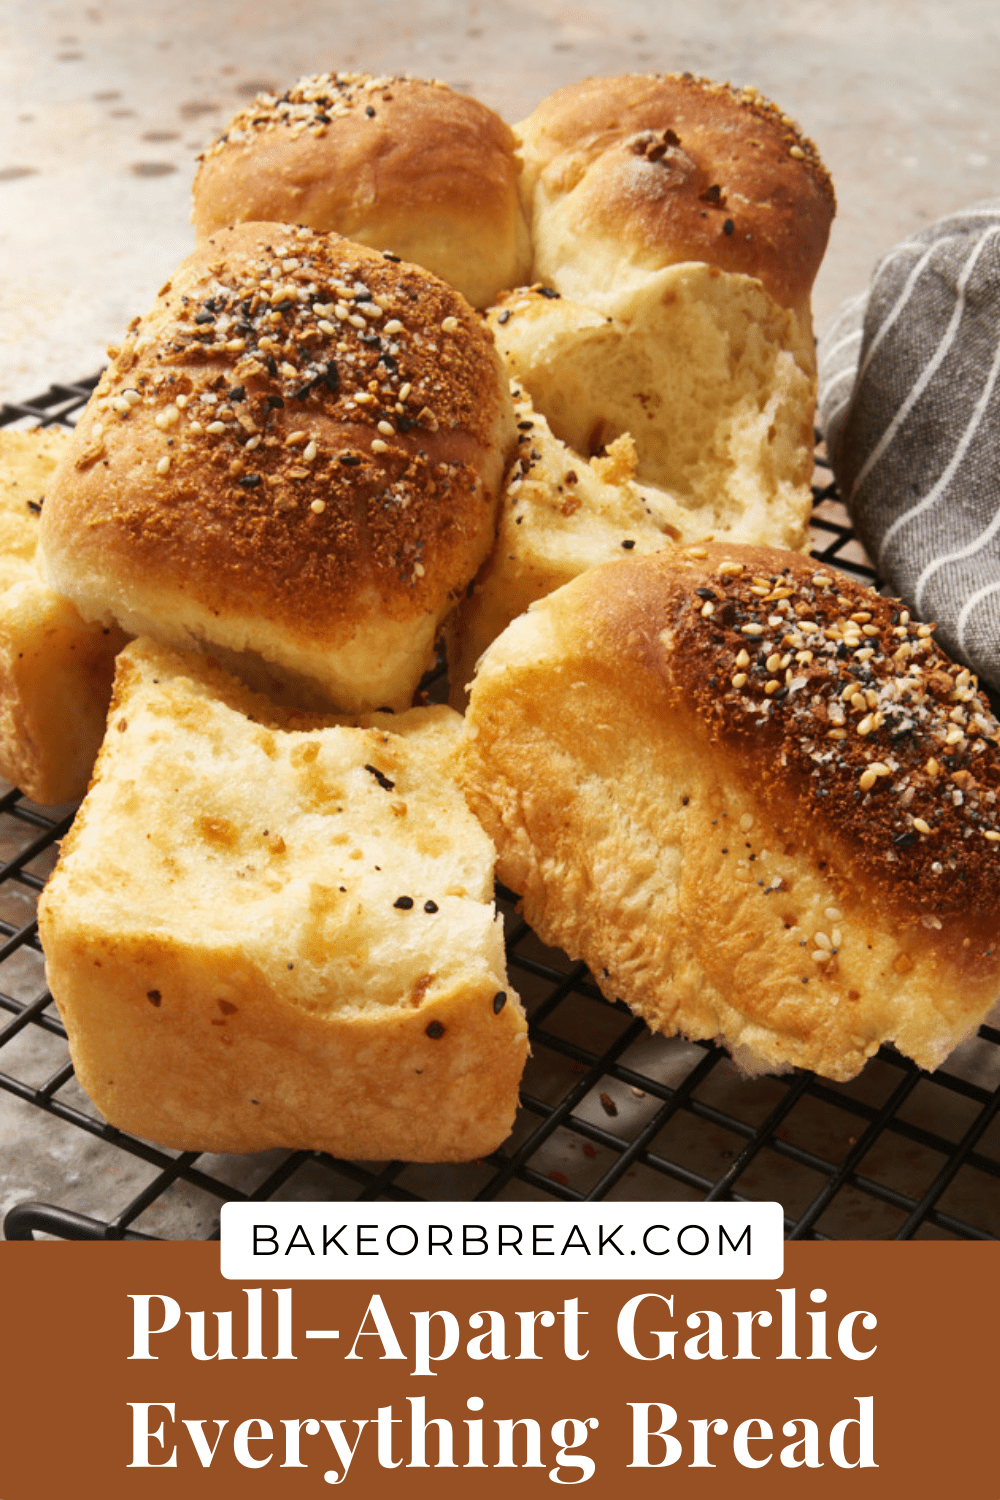 Pull-Apart Garlic Bread bakeorbreak.com